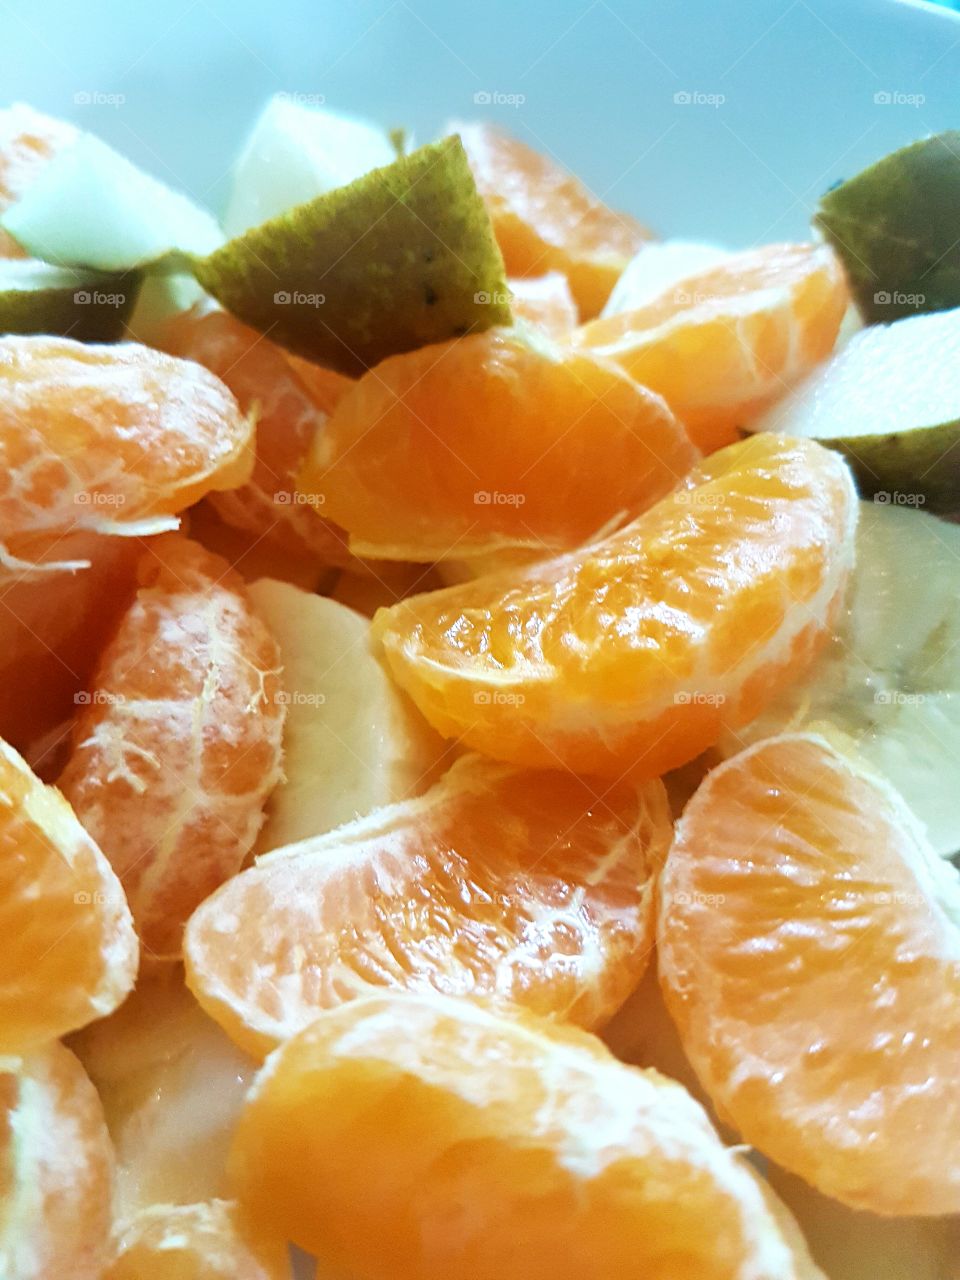 Mandarine Orange and Apple salad